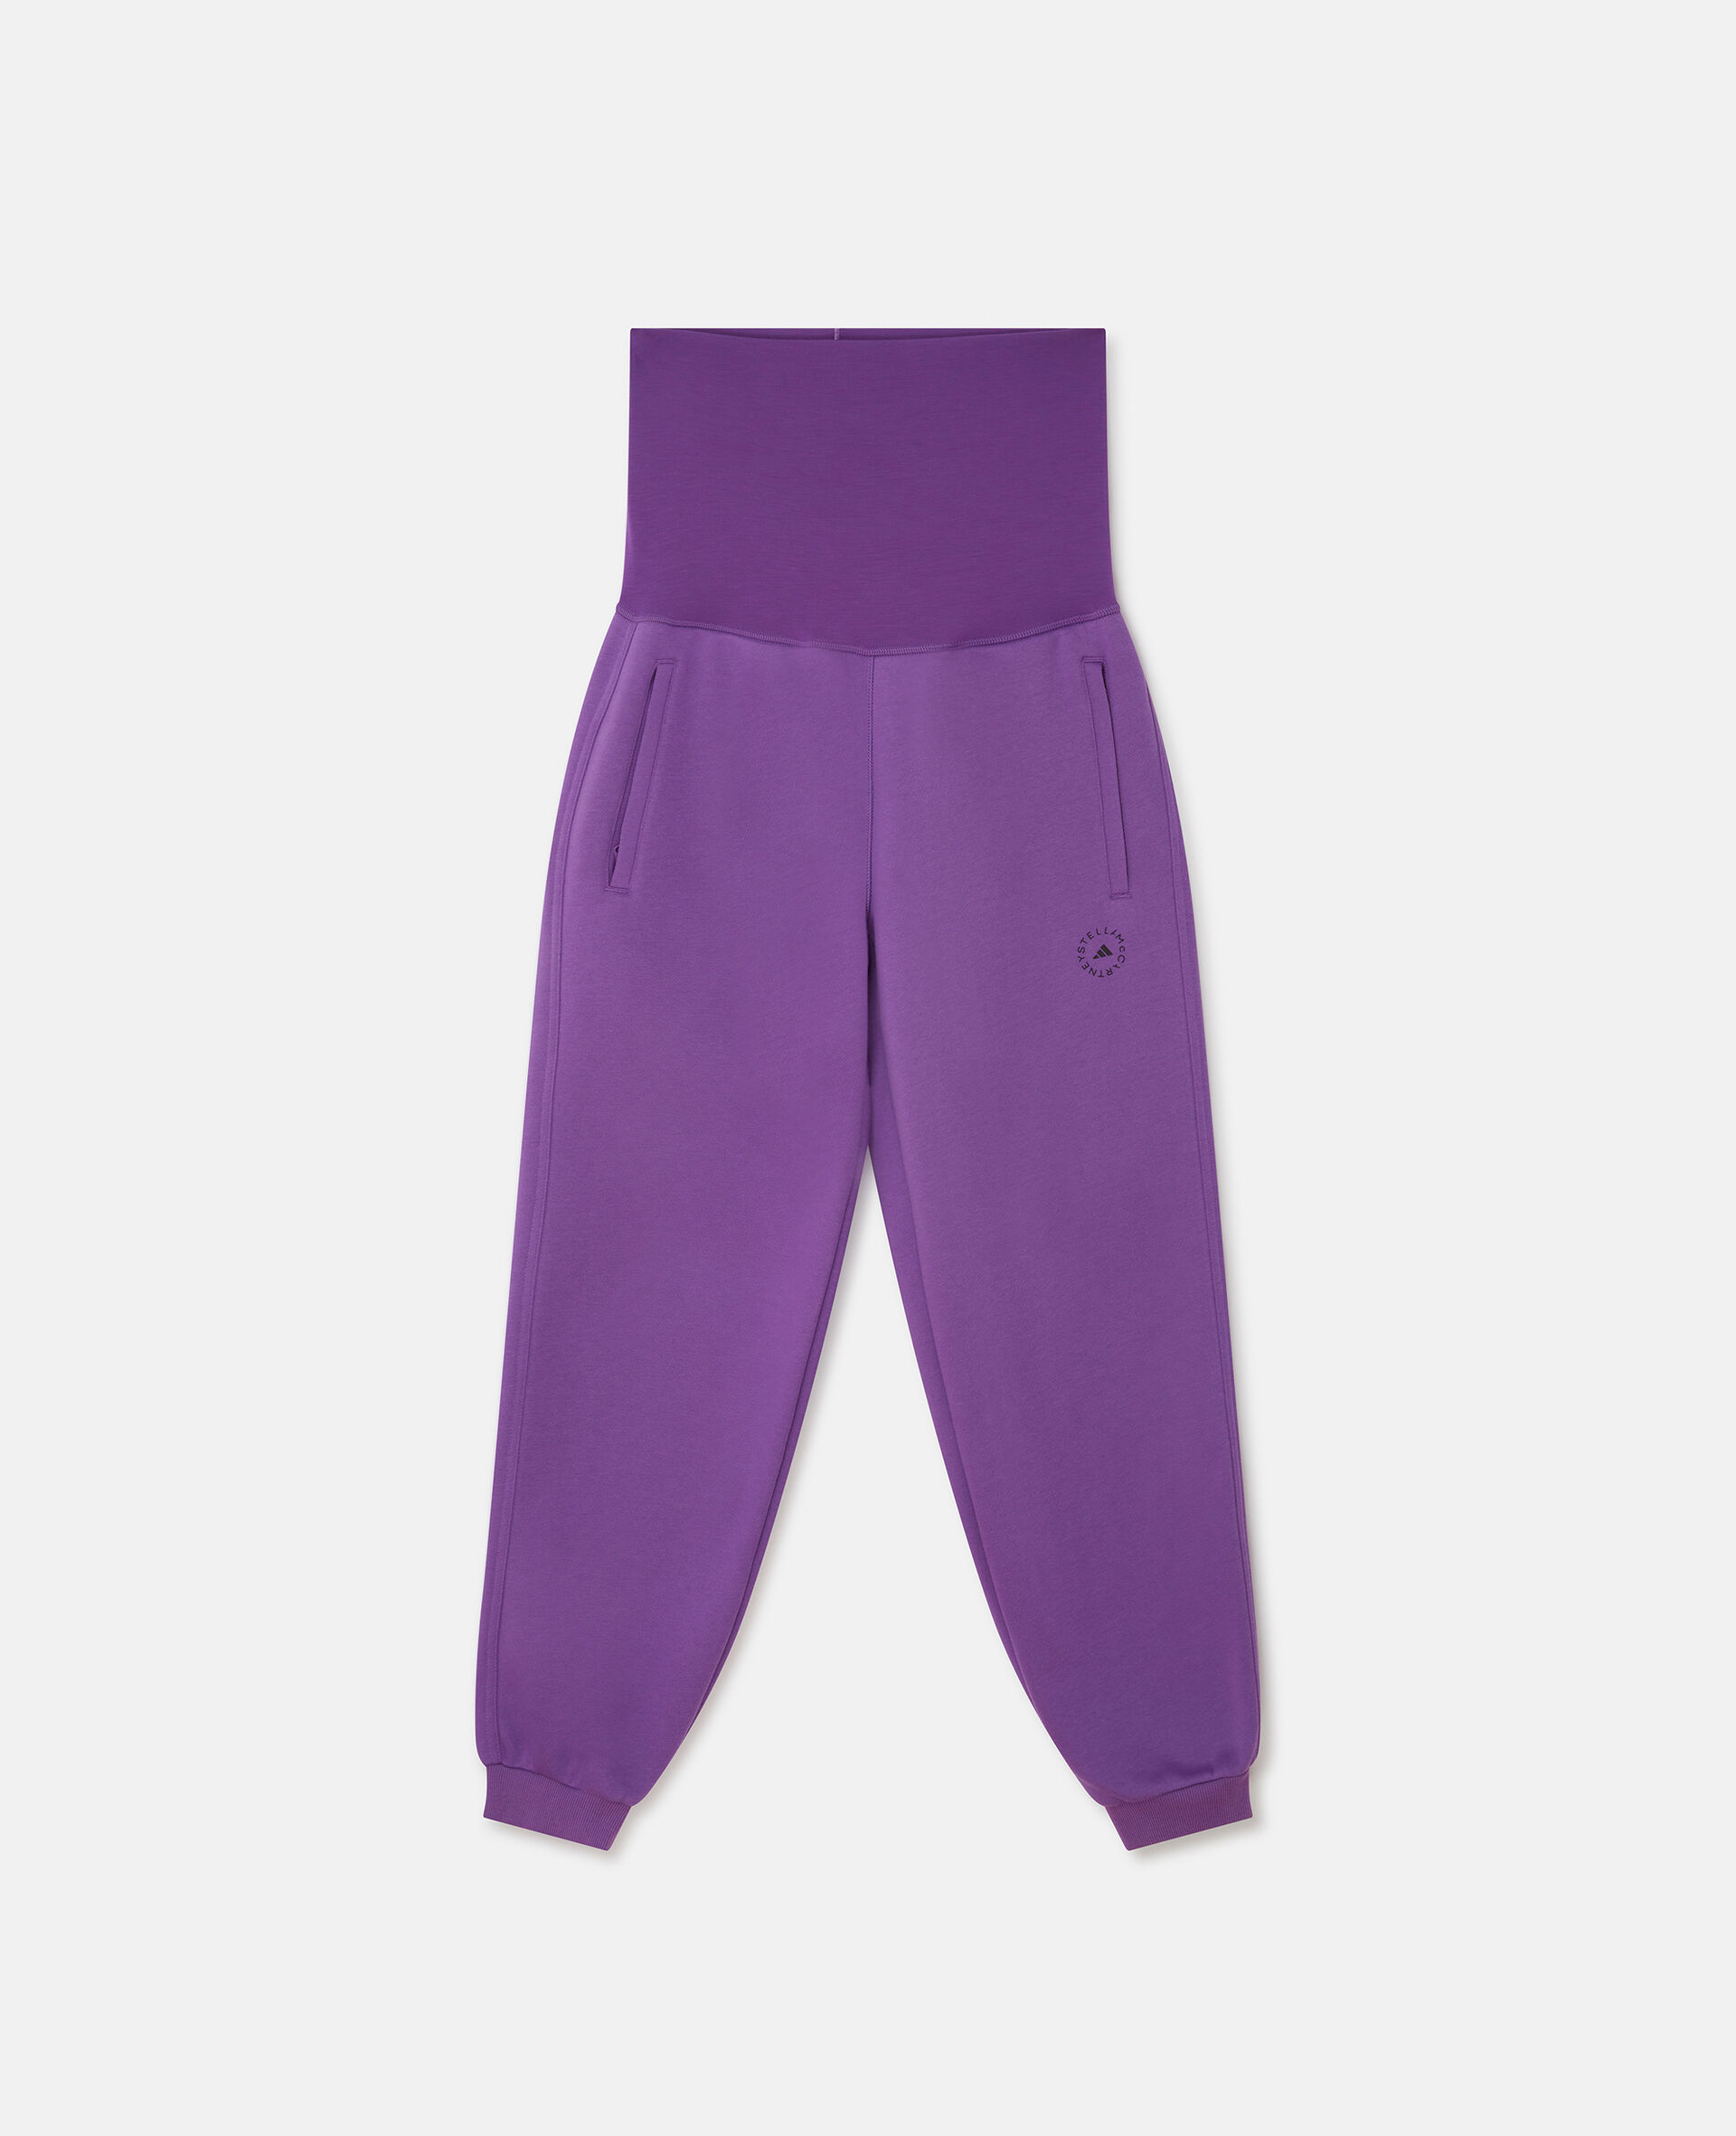 Pantalon polaire Maternite-Purple-large image number 0